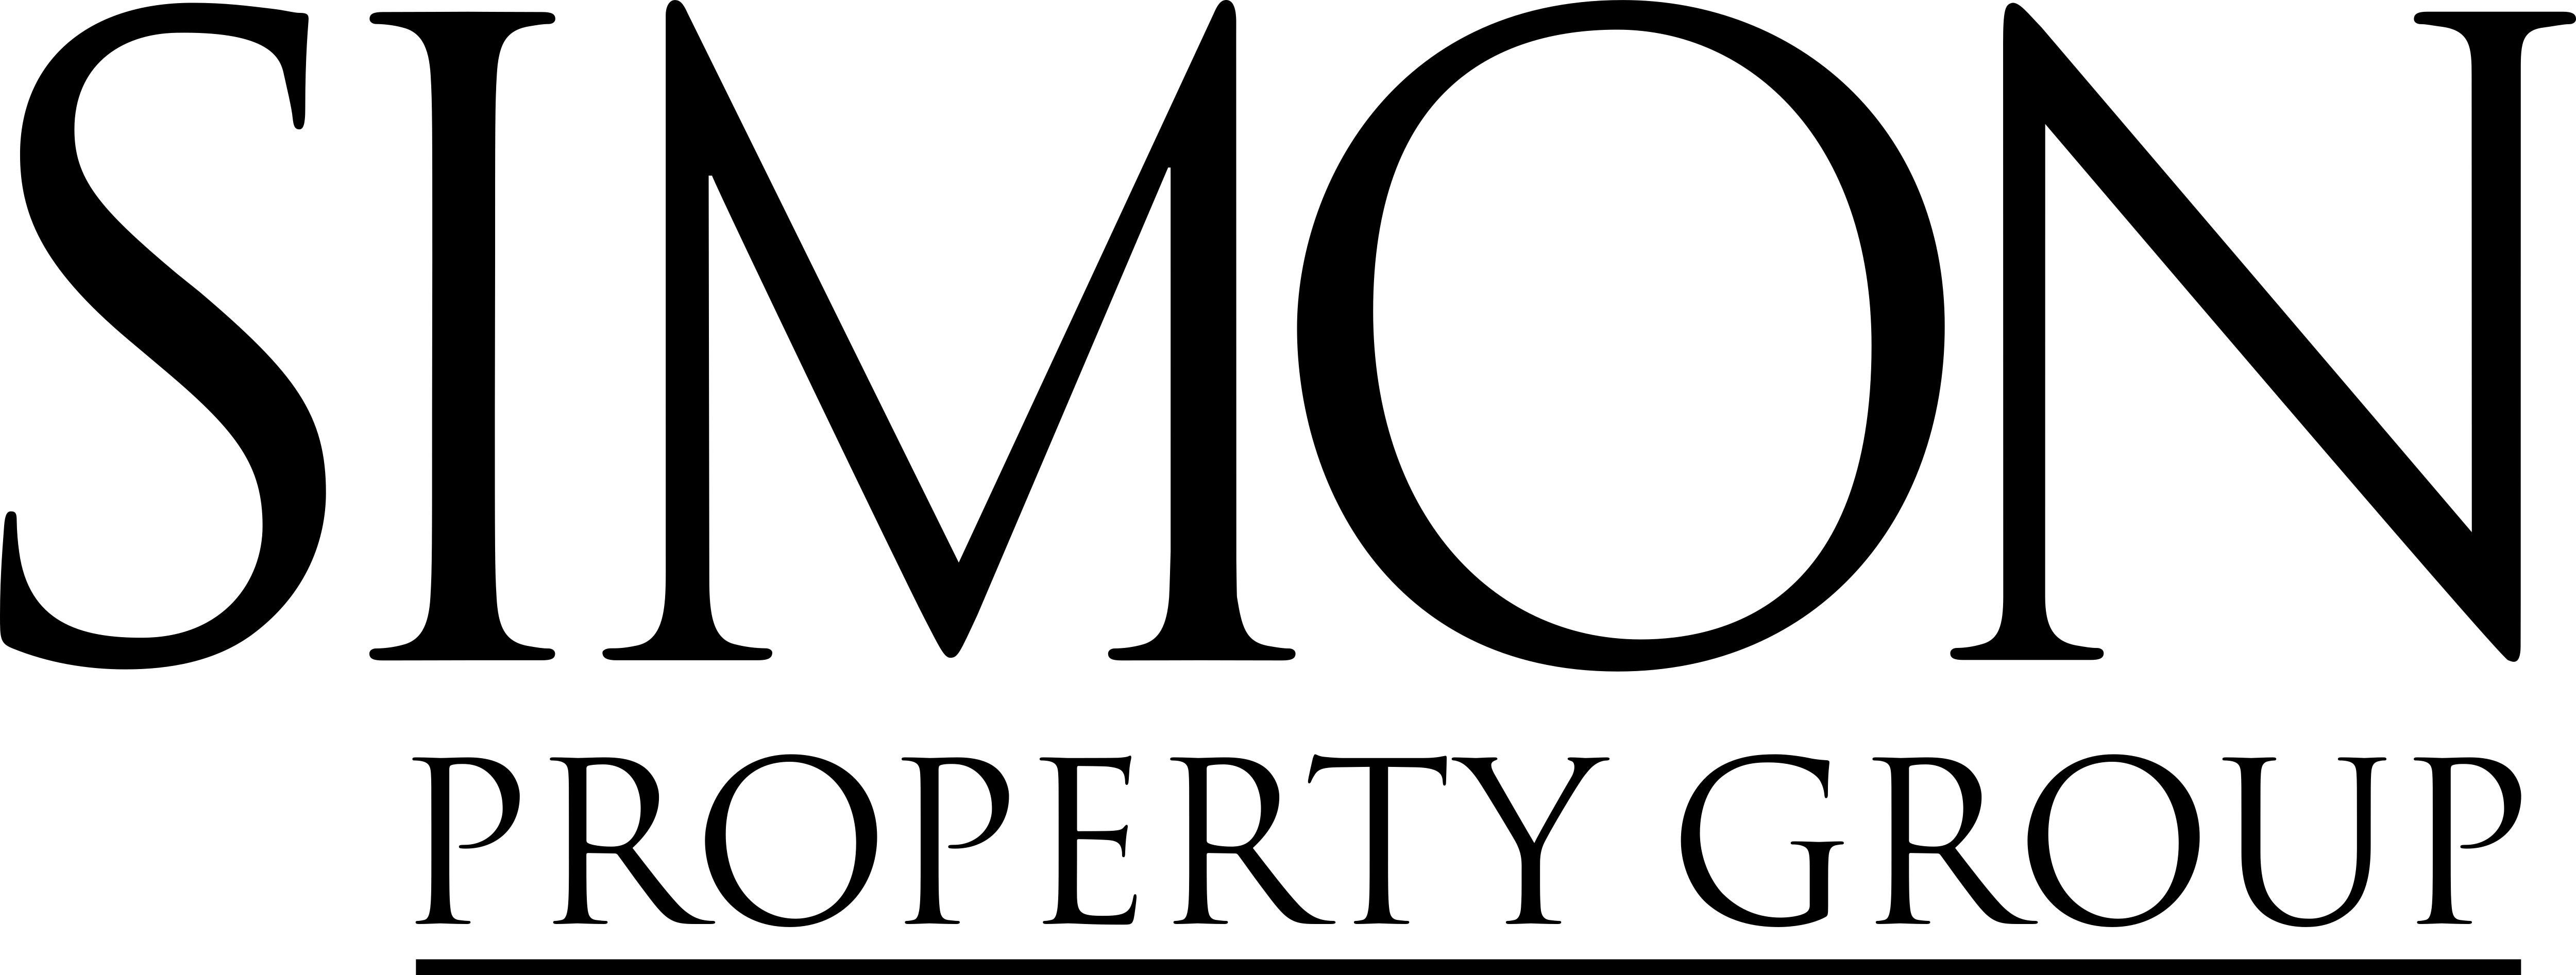 Simon Logo - Simon Property Group – Logos Download